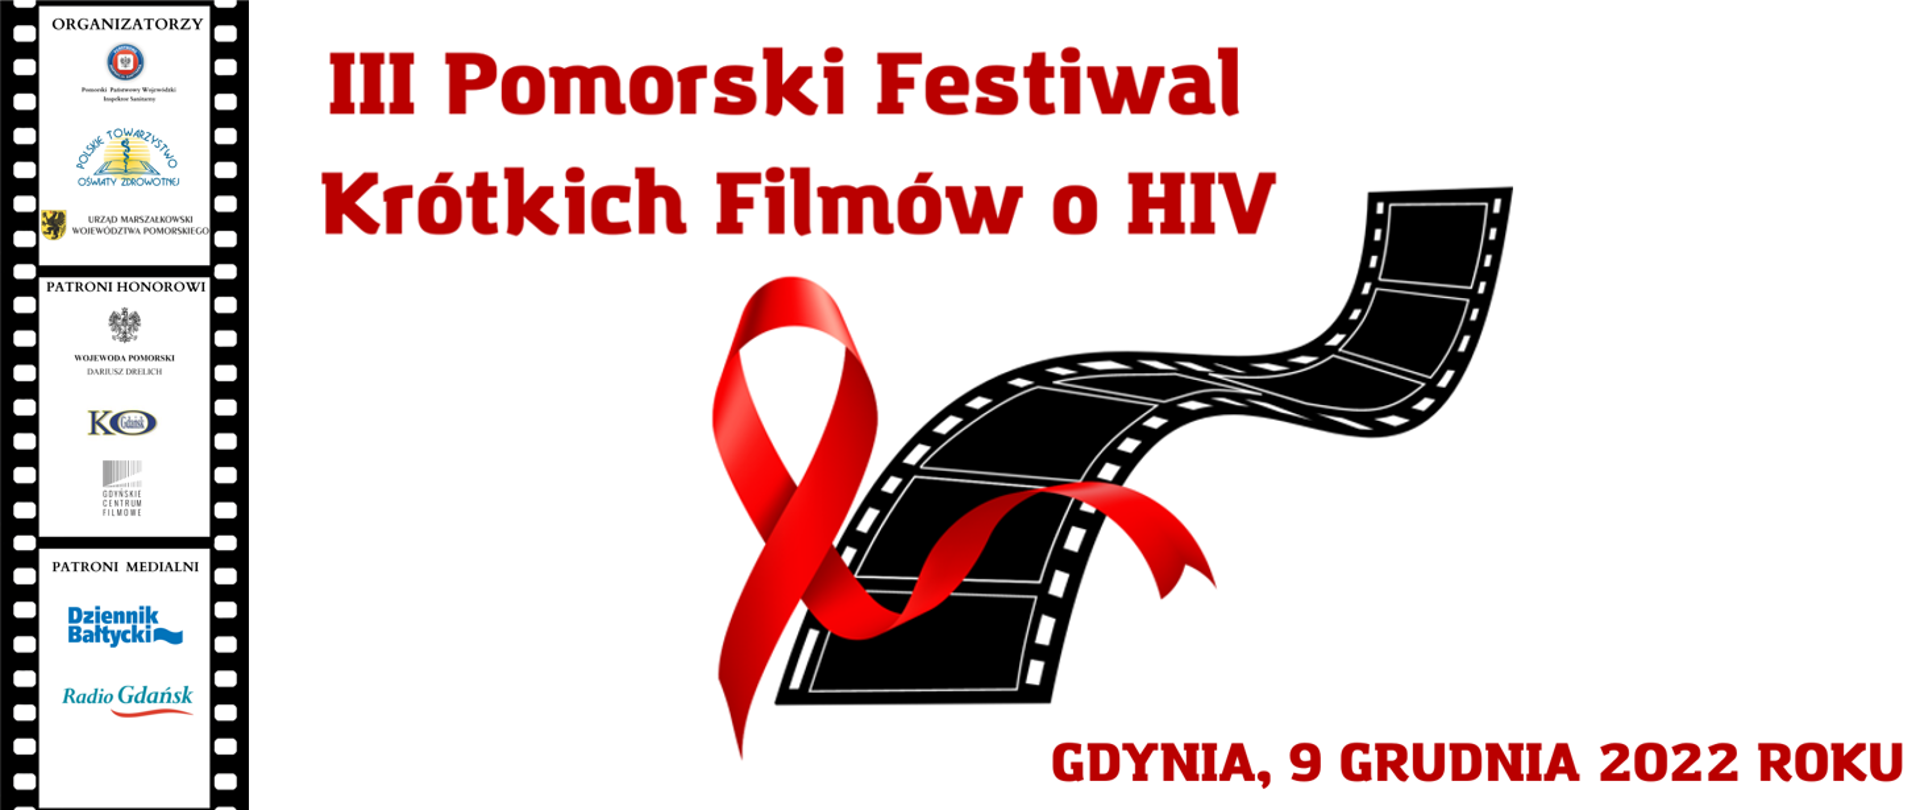 Plakat III Pomorskiego Festiwalu Krótkich Filmów o HIV